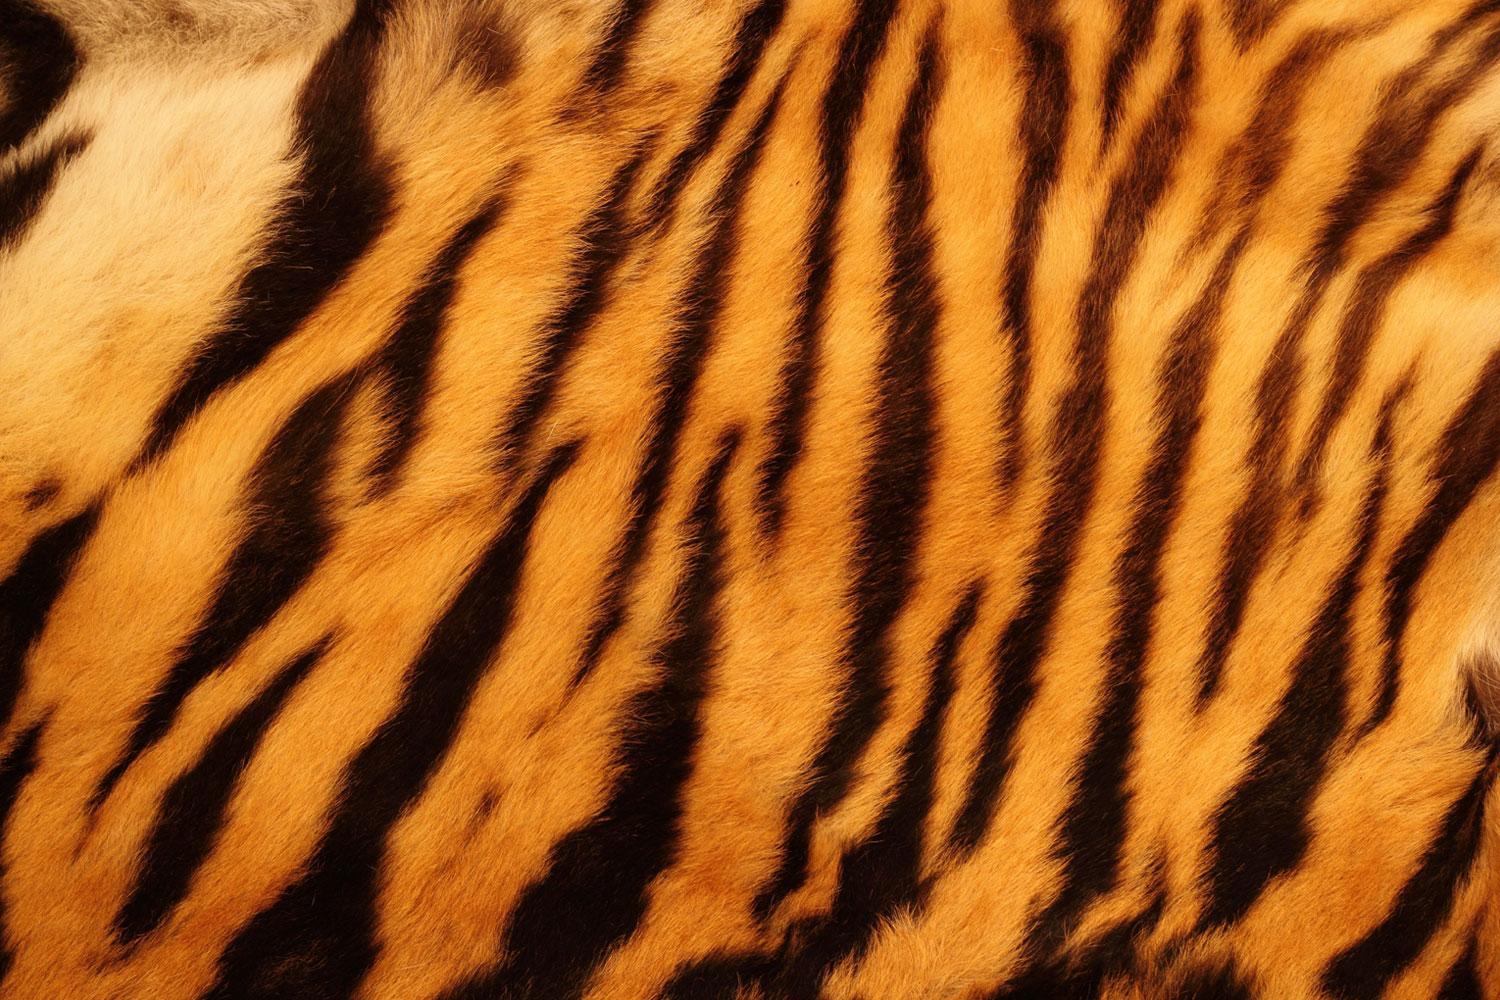 Tiger Stripes Pictures  Download Free Images on Unsplash